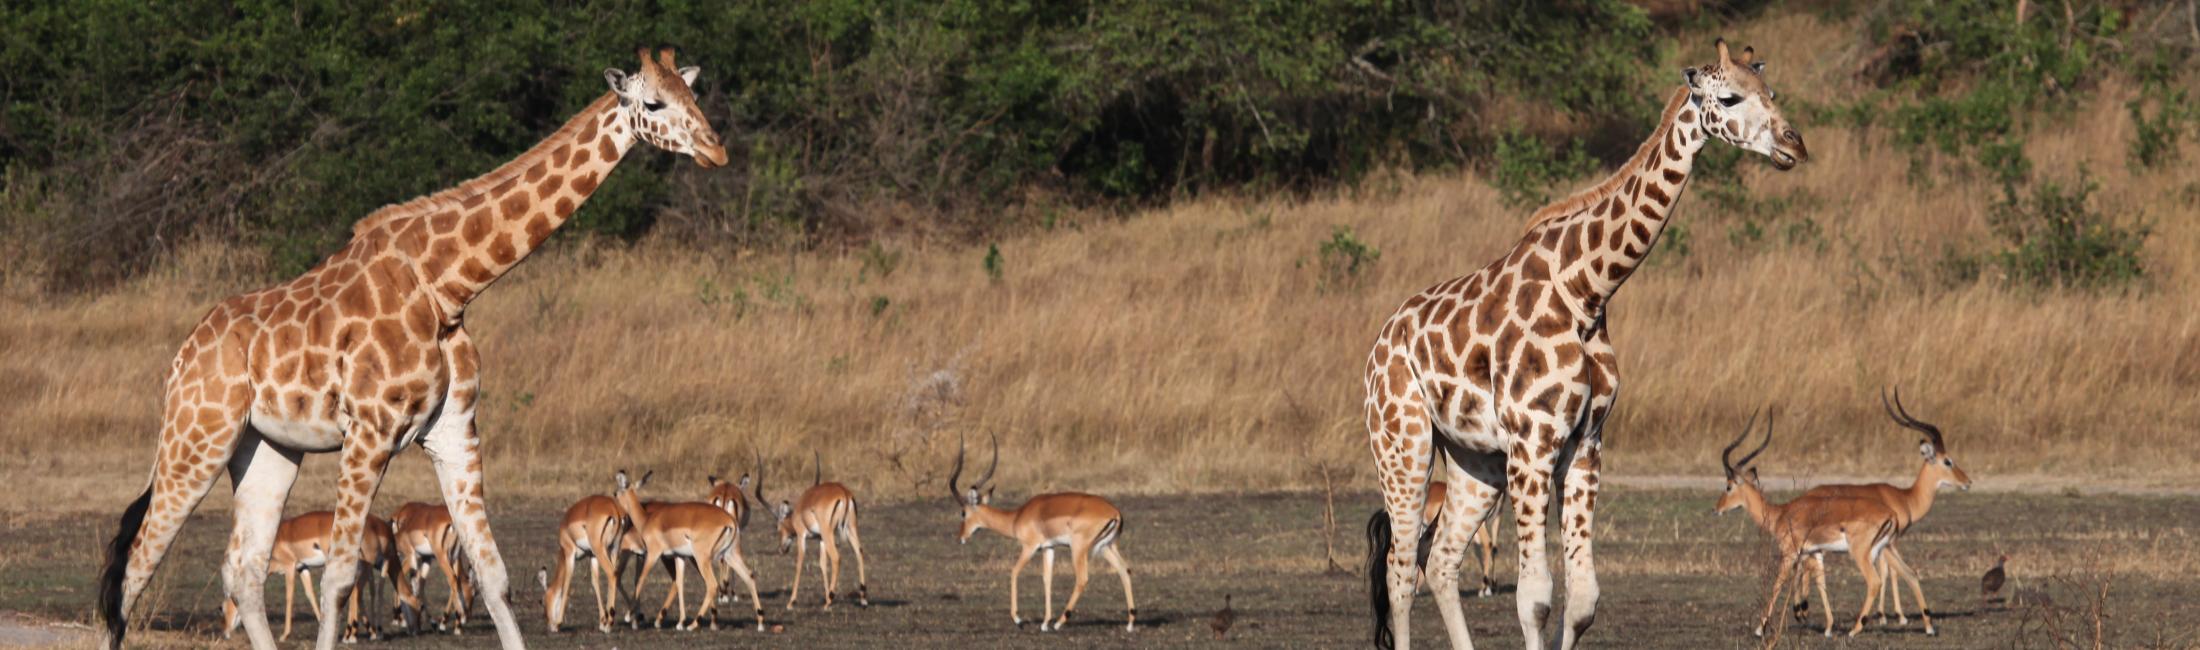 Rothschild's Giraffes with Impala Lake Mburo National Park (Uganda) 